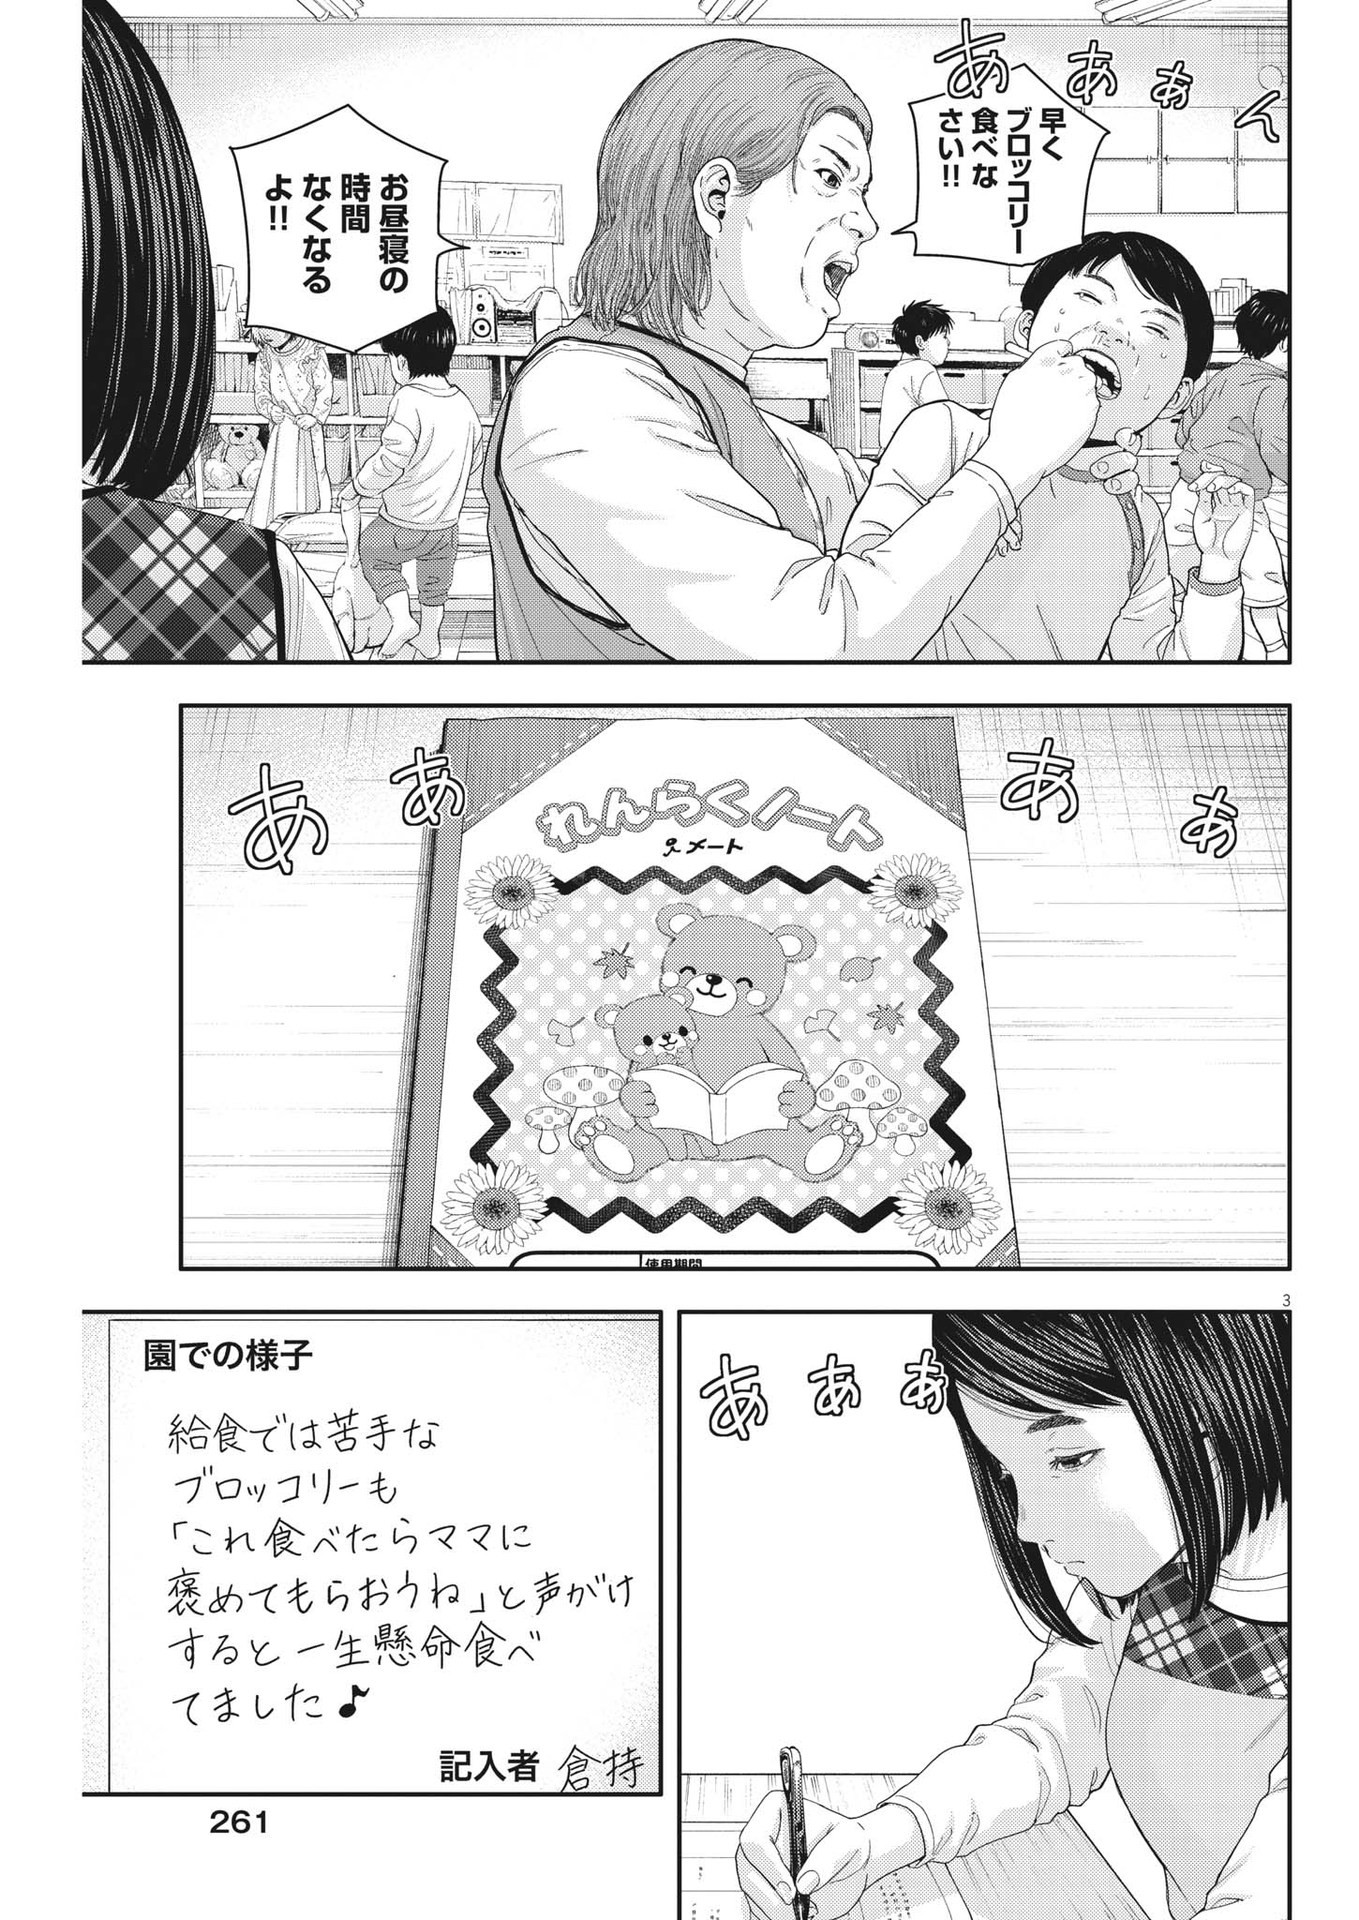 Yumenashi-sensei no Shinroshidou - Chapter 23 - Page 3